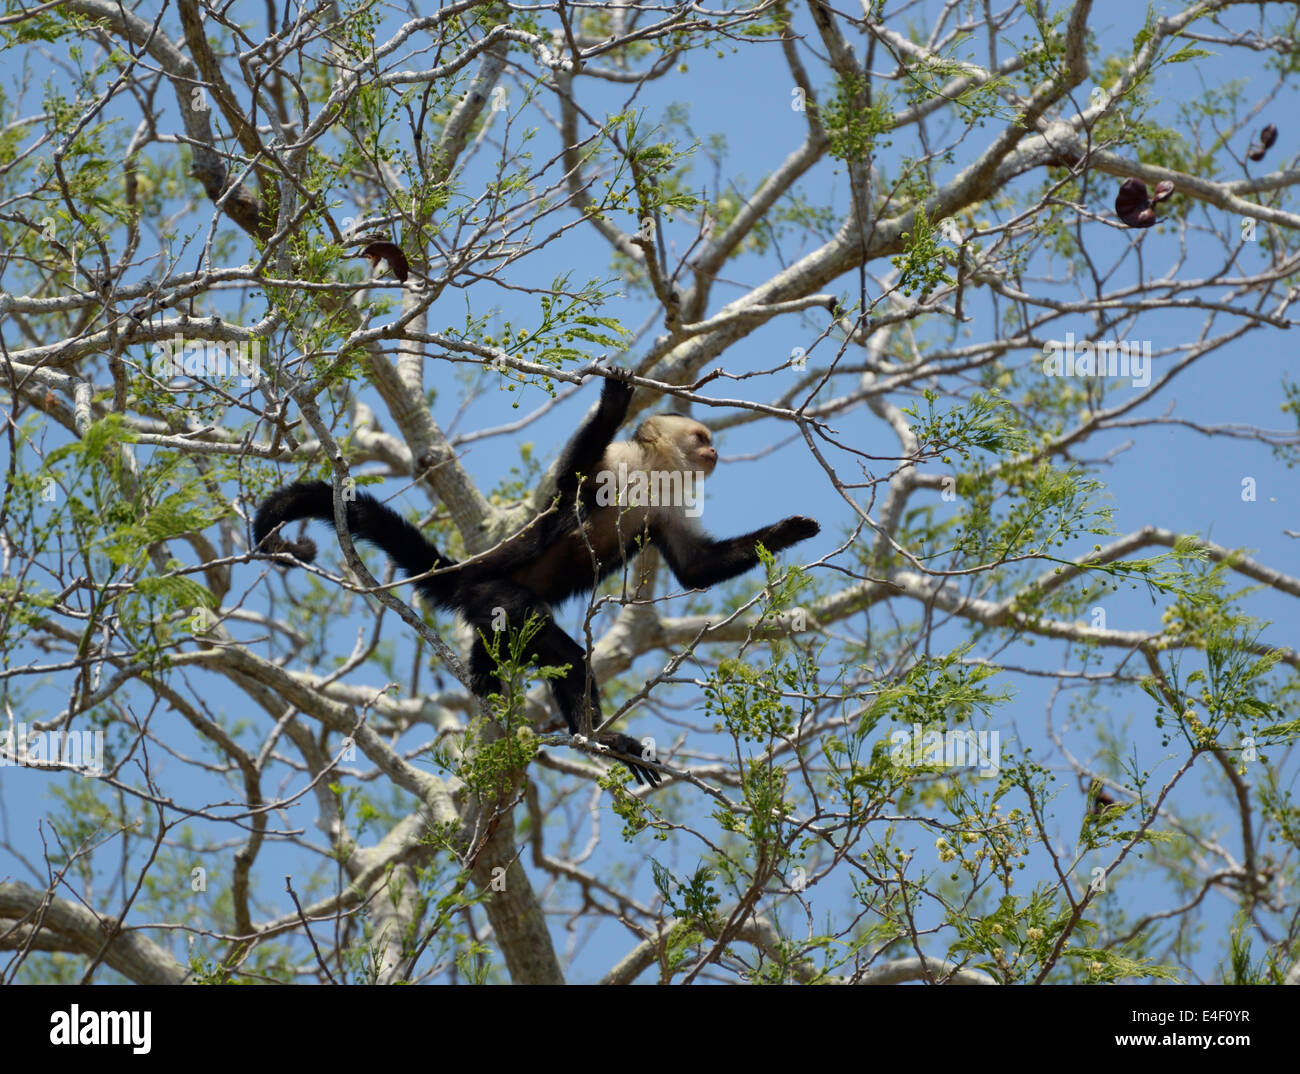 Singe capucin à face blanche, Cebus capucinus, Guanacaste, Costa Rica en arbre, Parc National Santa Rosa, Guanacaste, Costa Rica Banque D'Images